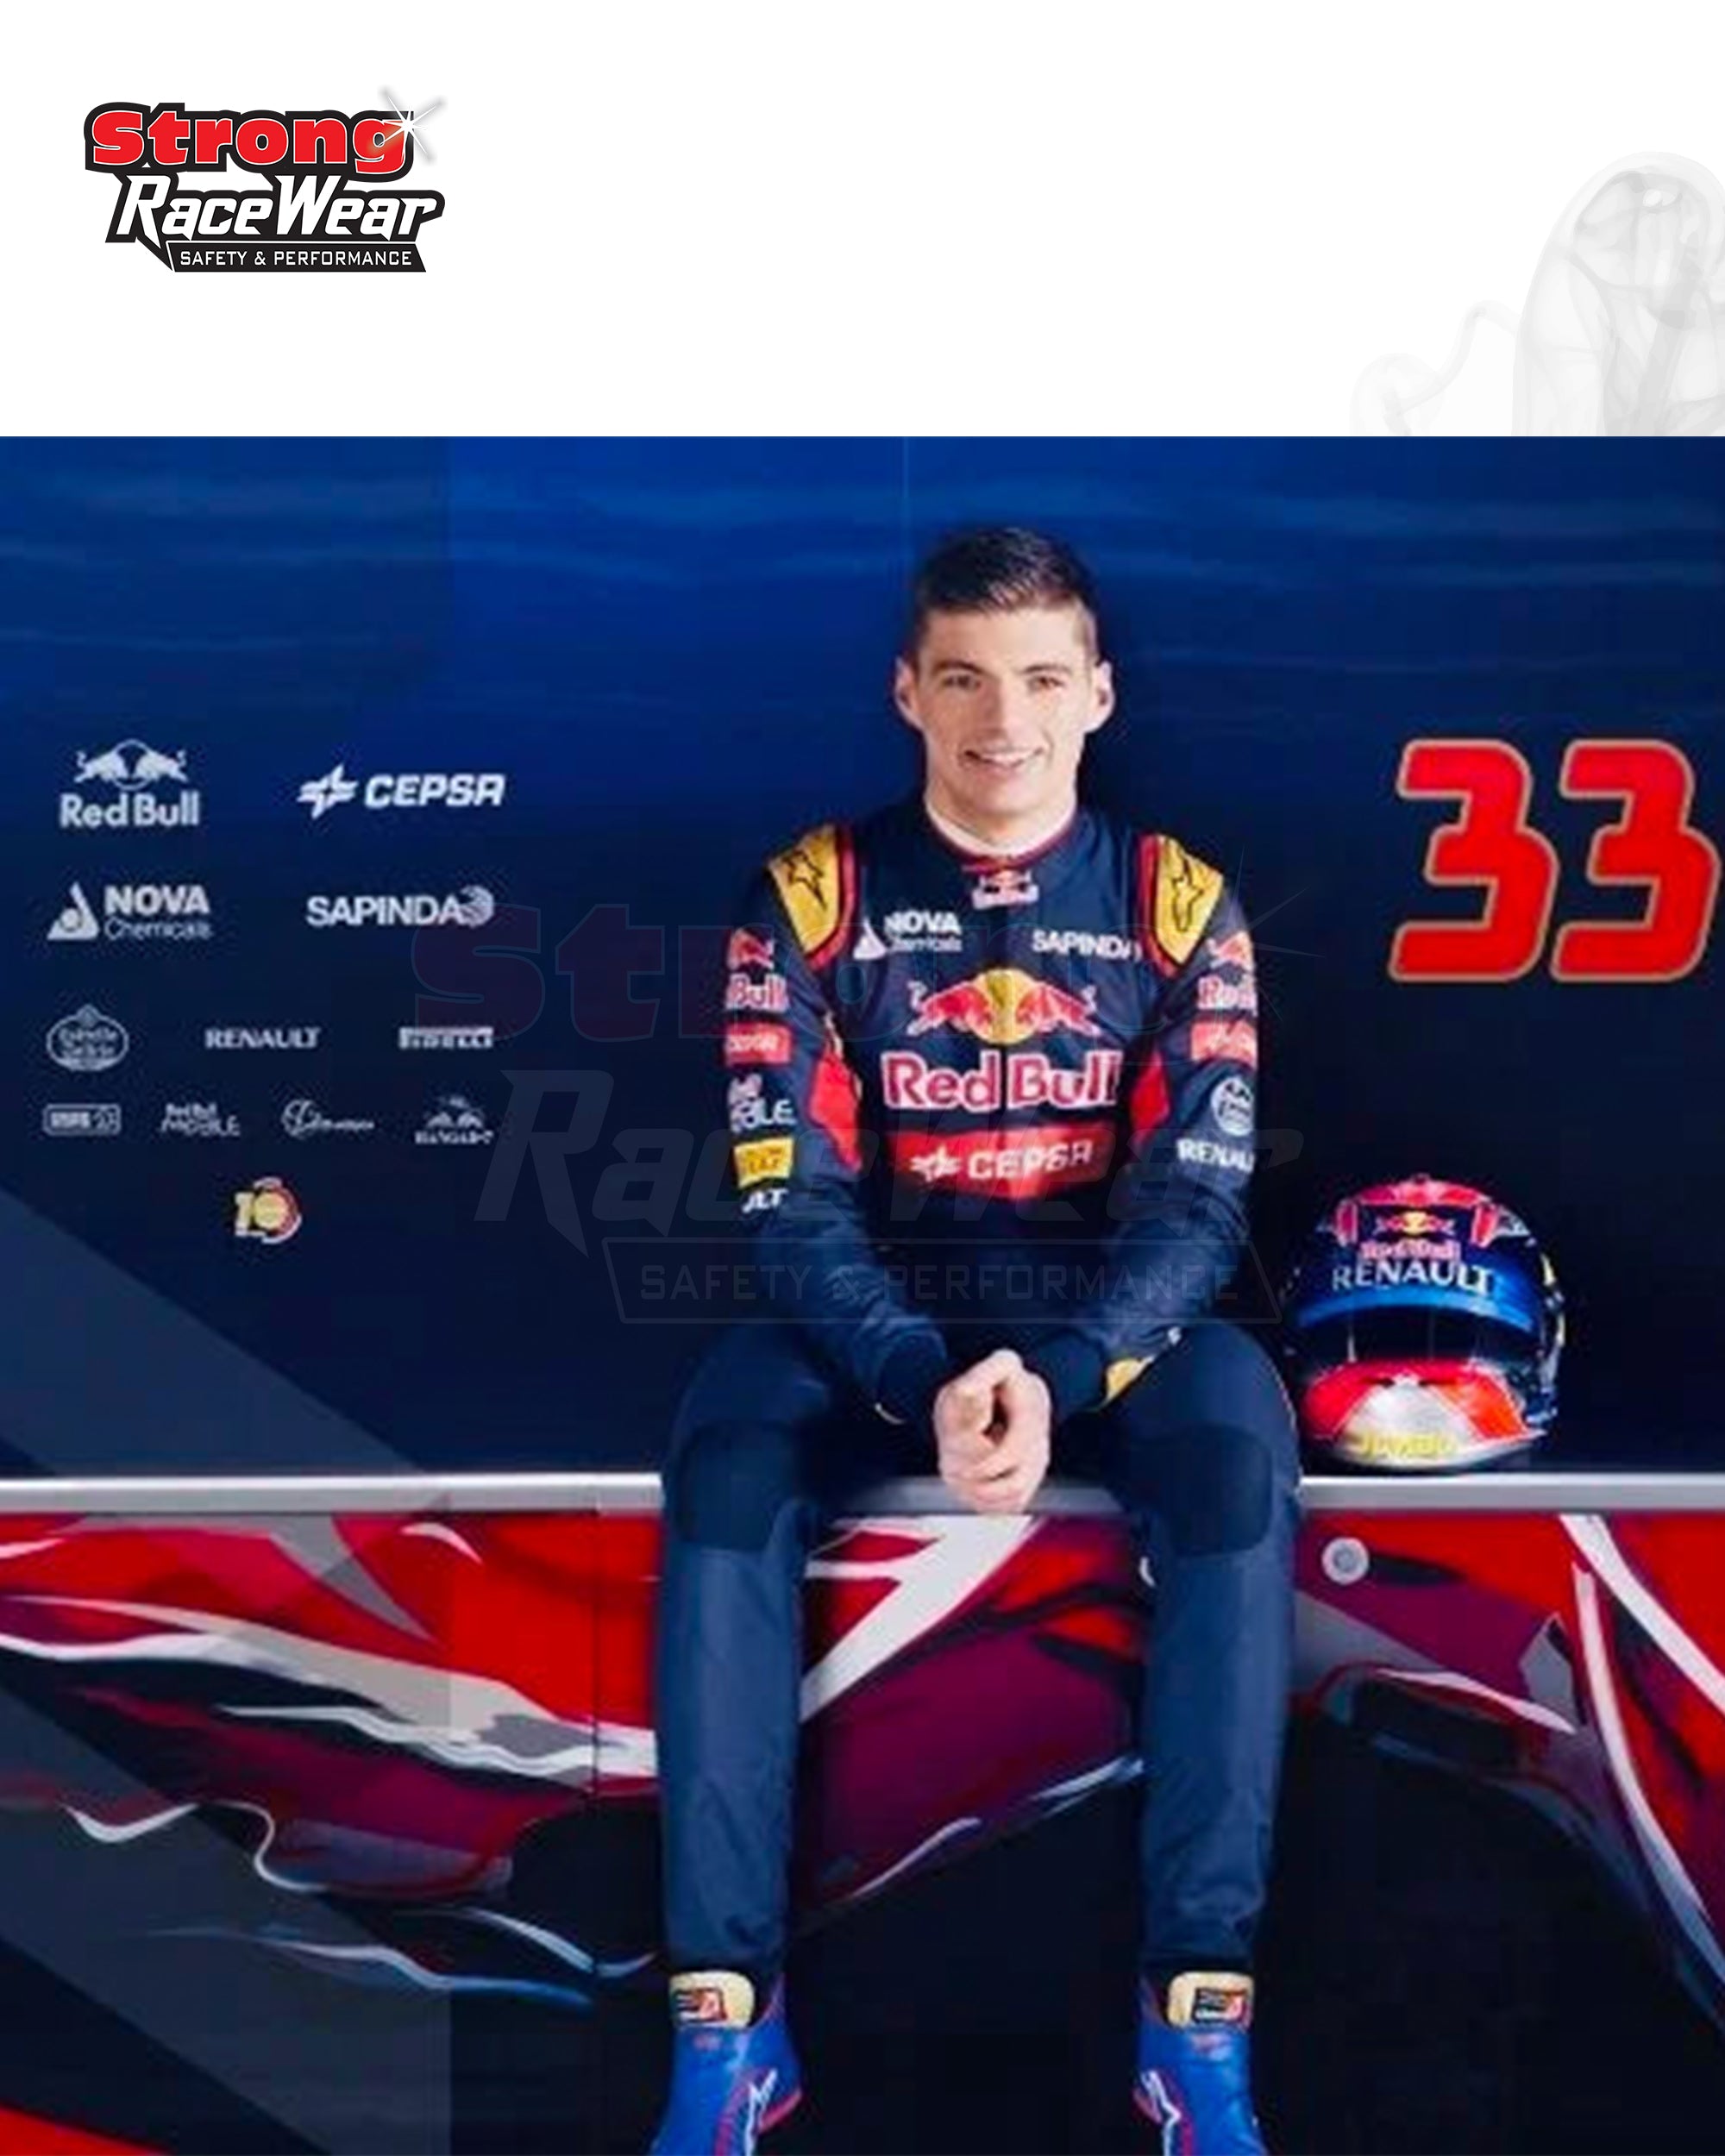 2015 Max Verstappen Red Bull Racing F1 Suit